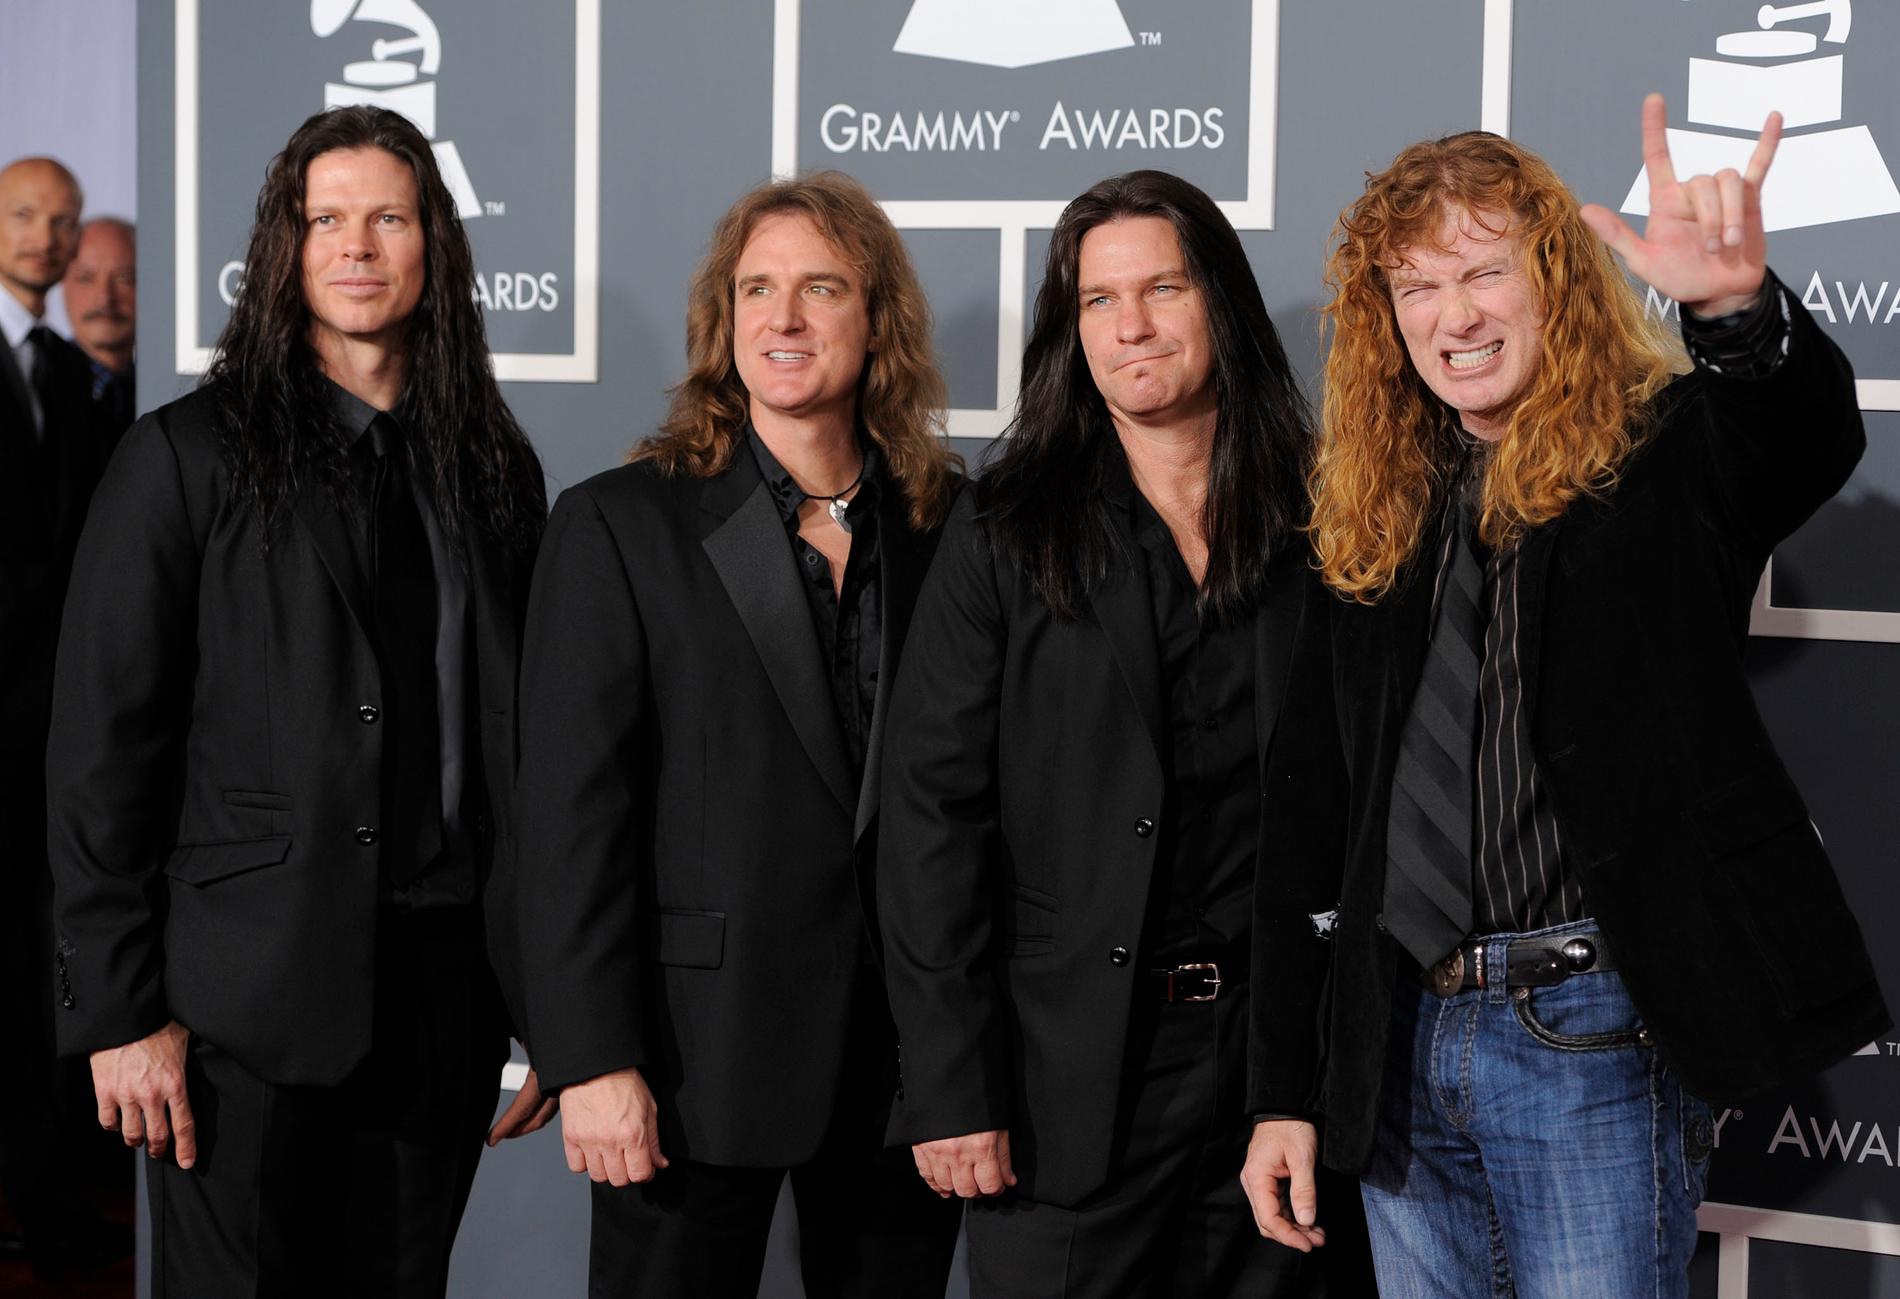 Megadeths sparkade basist David Ellefson är inte välkommen tillbaka, enligt bandets frontman Dave Mustaine. Från vänster Chris Broderick, David Ellefson, Shawn Drover och Dave Mustaine. Arkivbild.